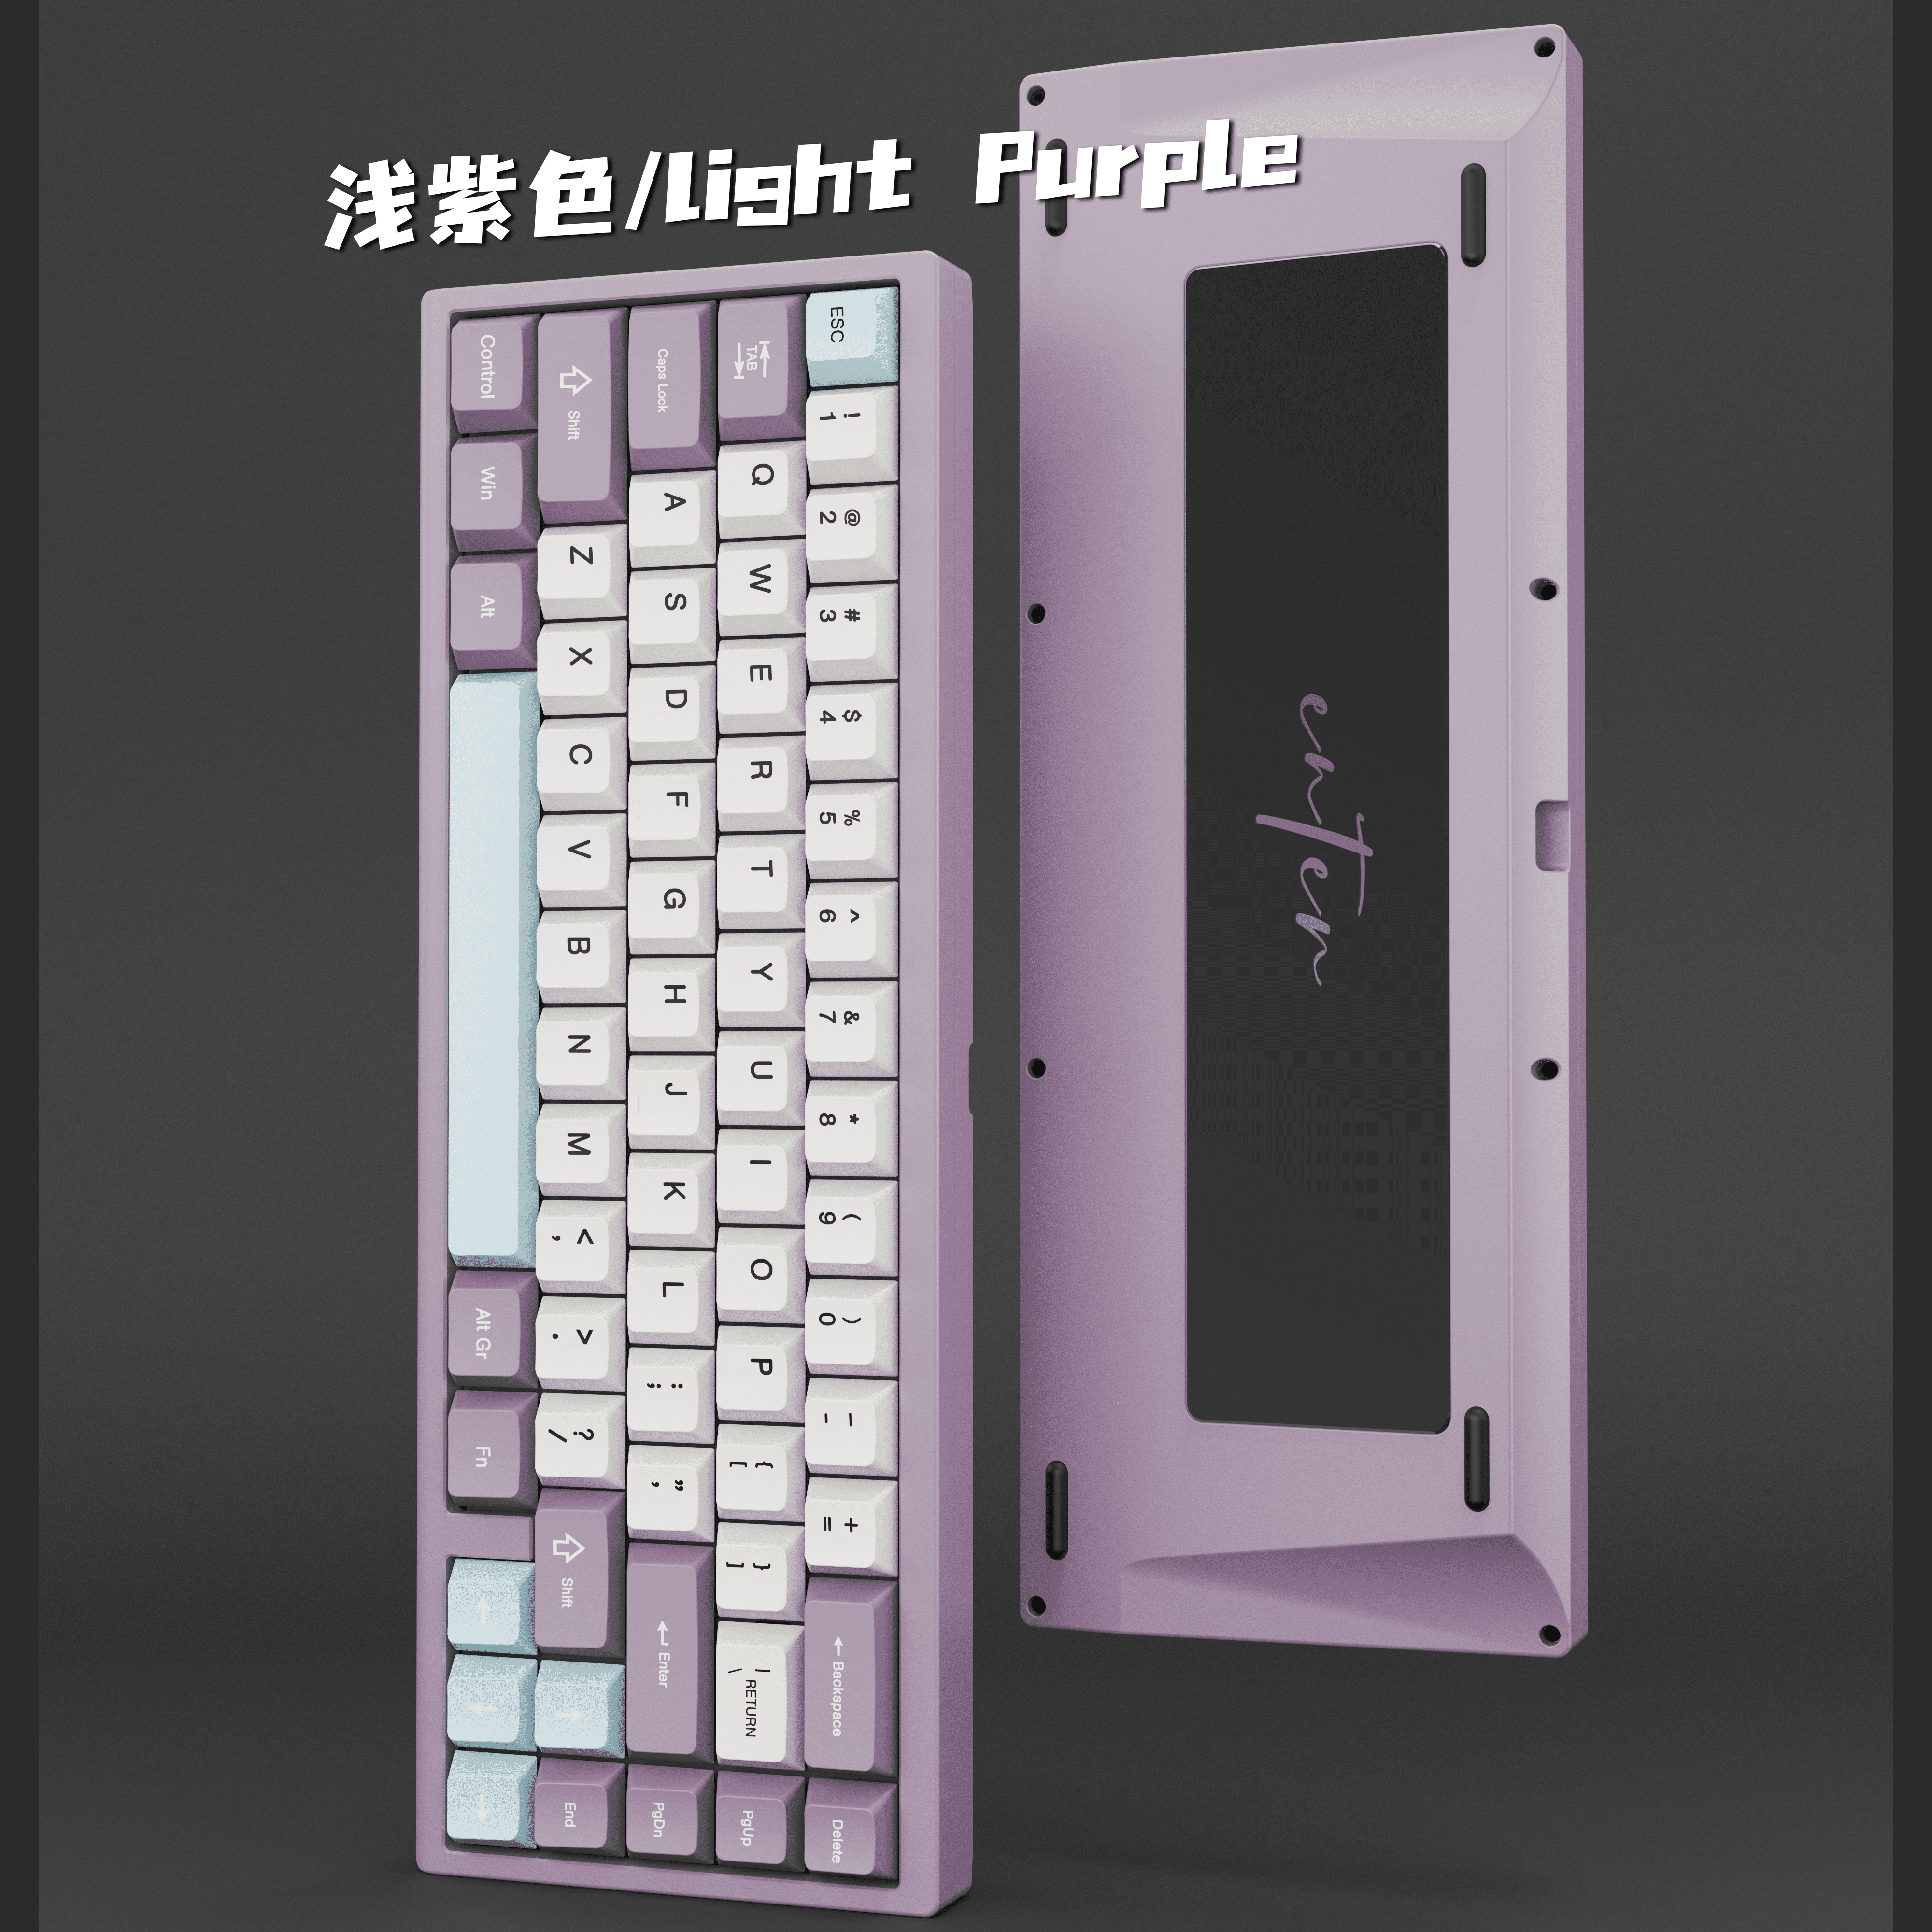 Enter67 v2 Keyboard Kit